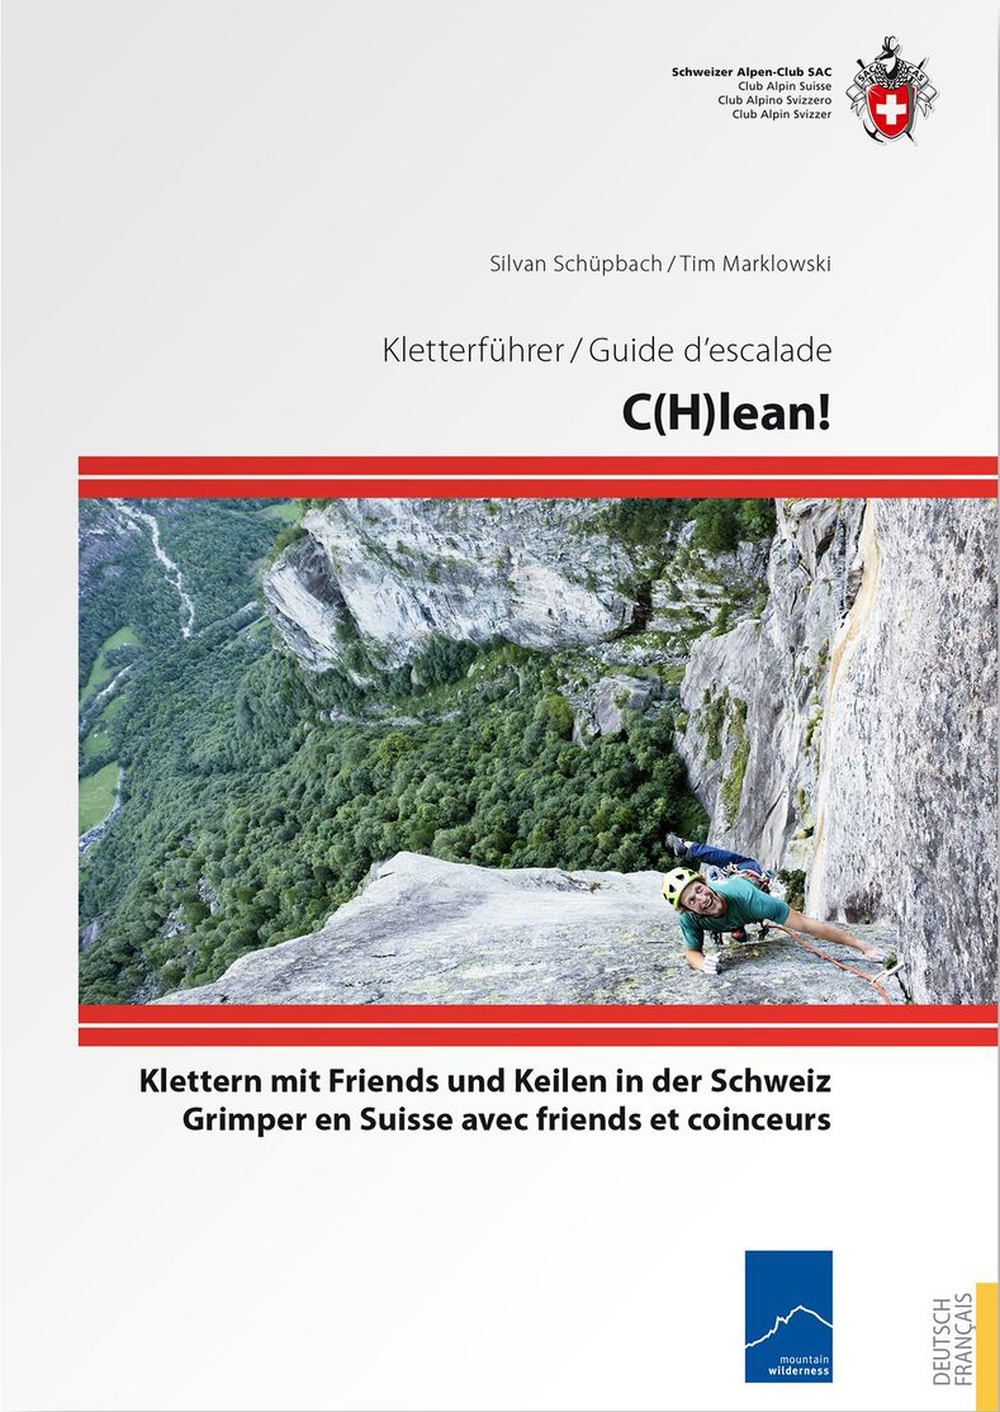 «C(h)lean. Klettern mit Friends und Keilen in der Schweiz»